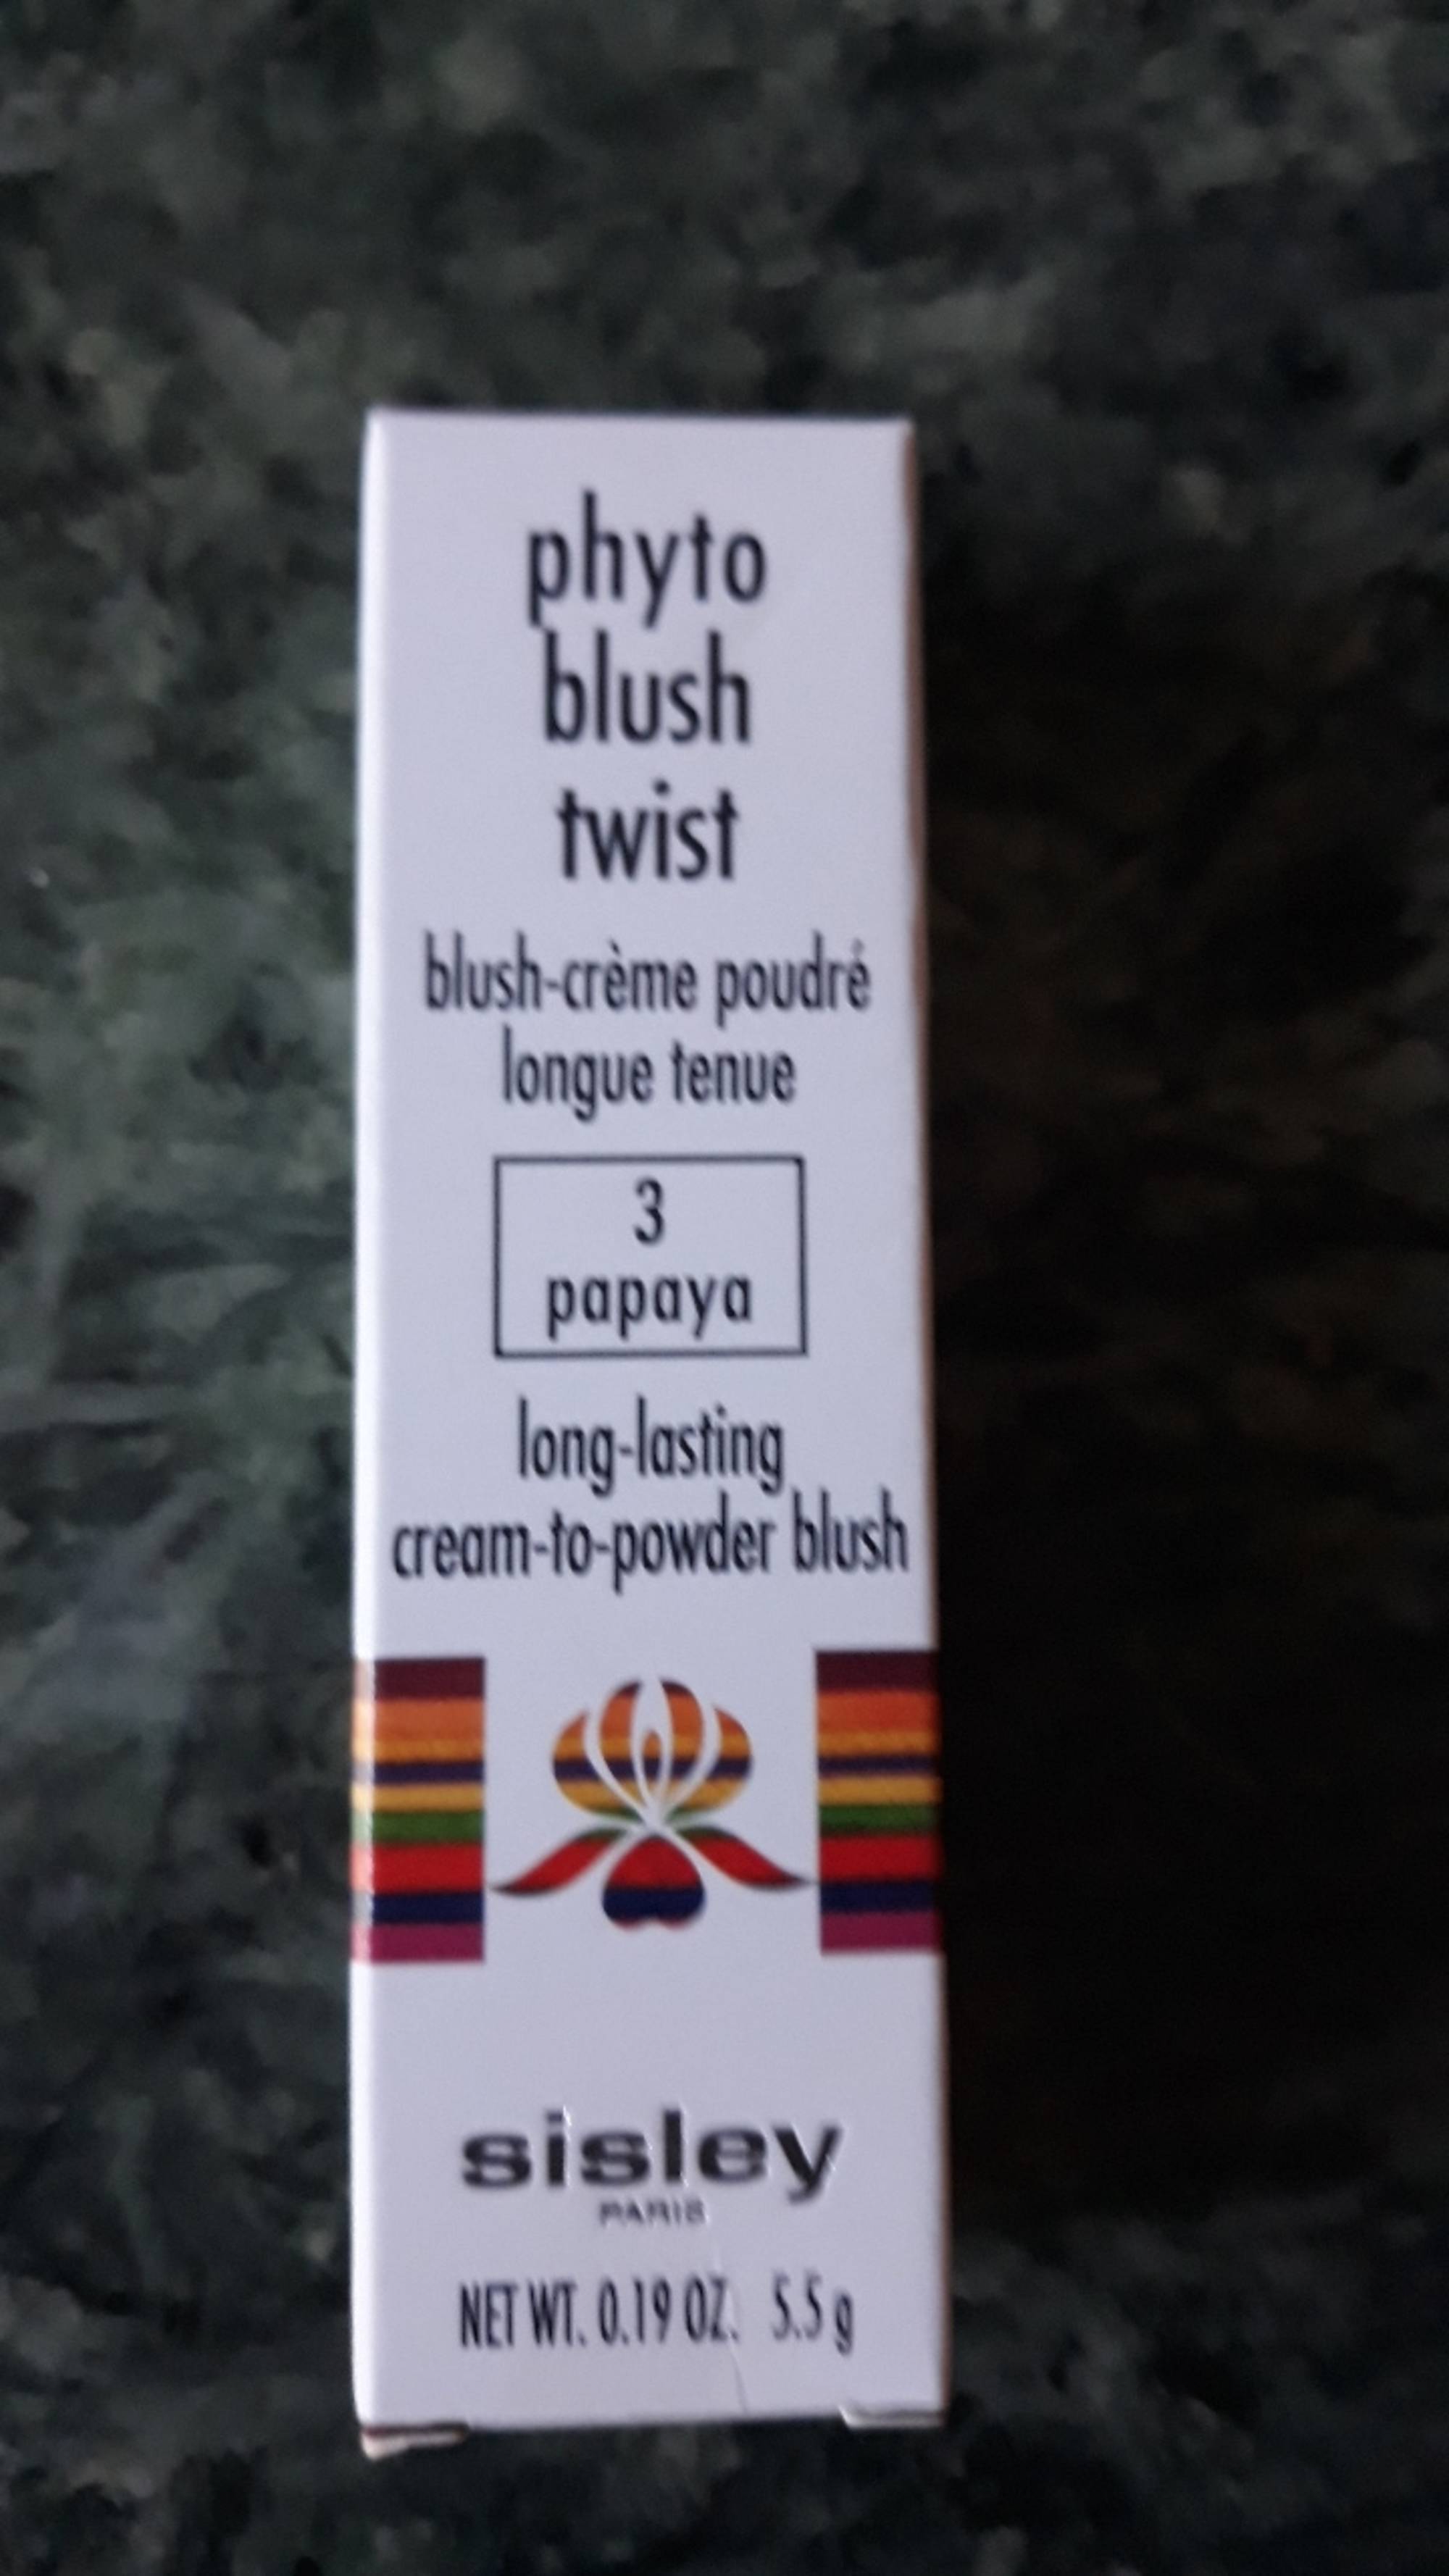 SISLEY - Phyto blush twist - Blush-crème poudré